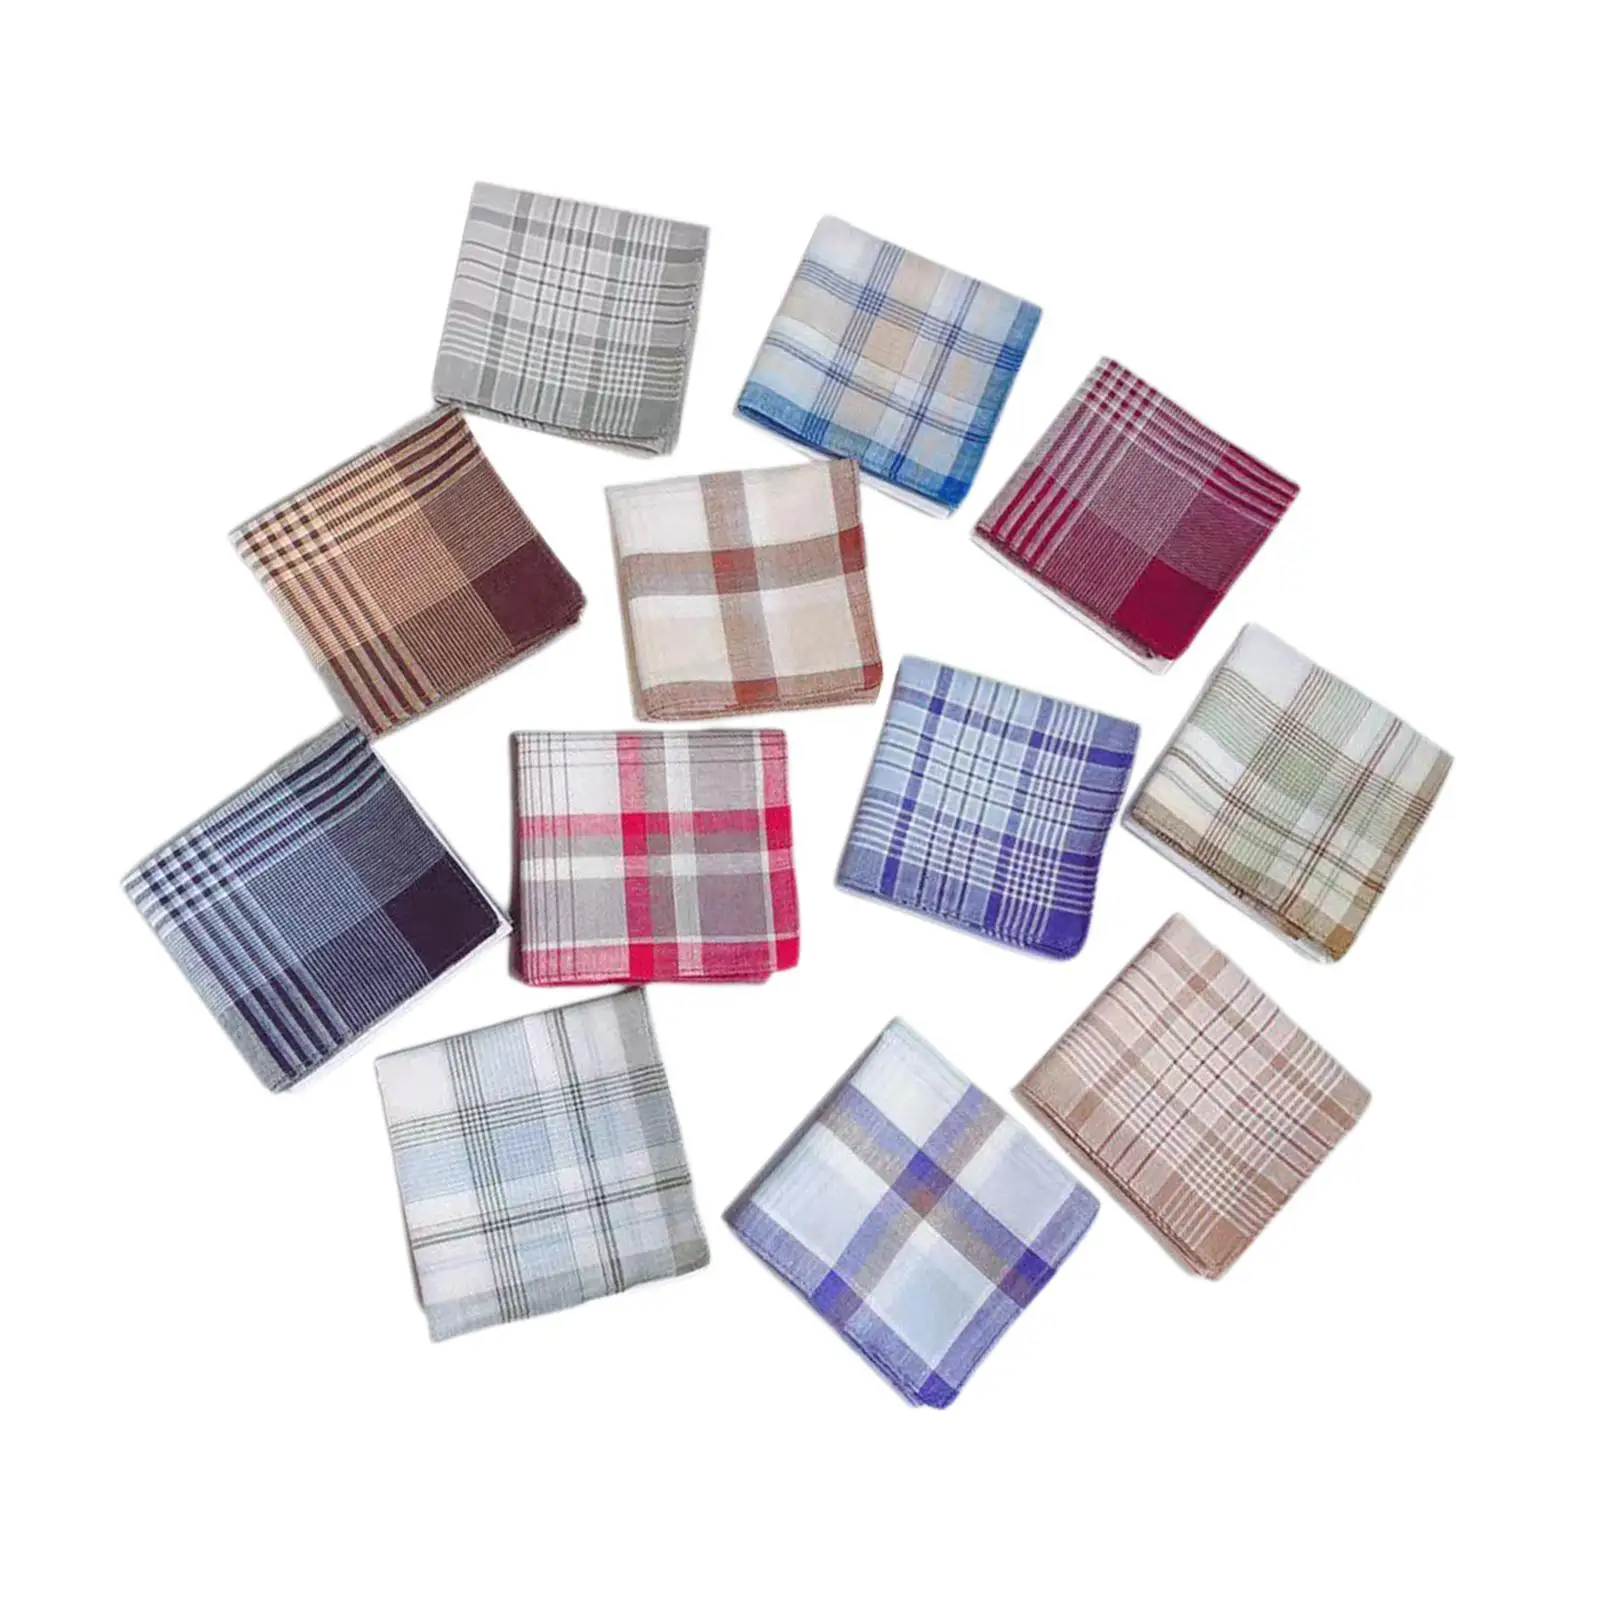 12x Pocket Square Hankies Assorted Pack Sweat Absorbing Elegant Men`s Handkerchiefs for Suit Party Wedding Gentlemen Women Men